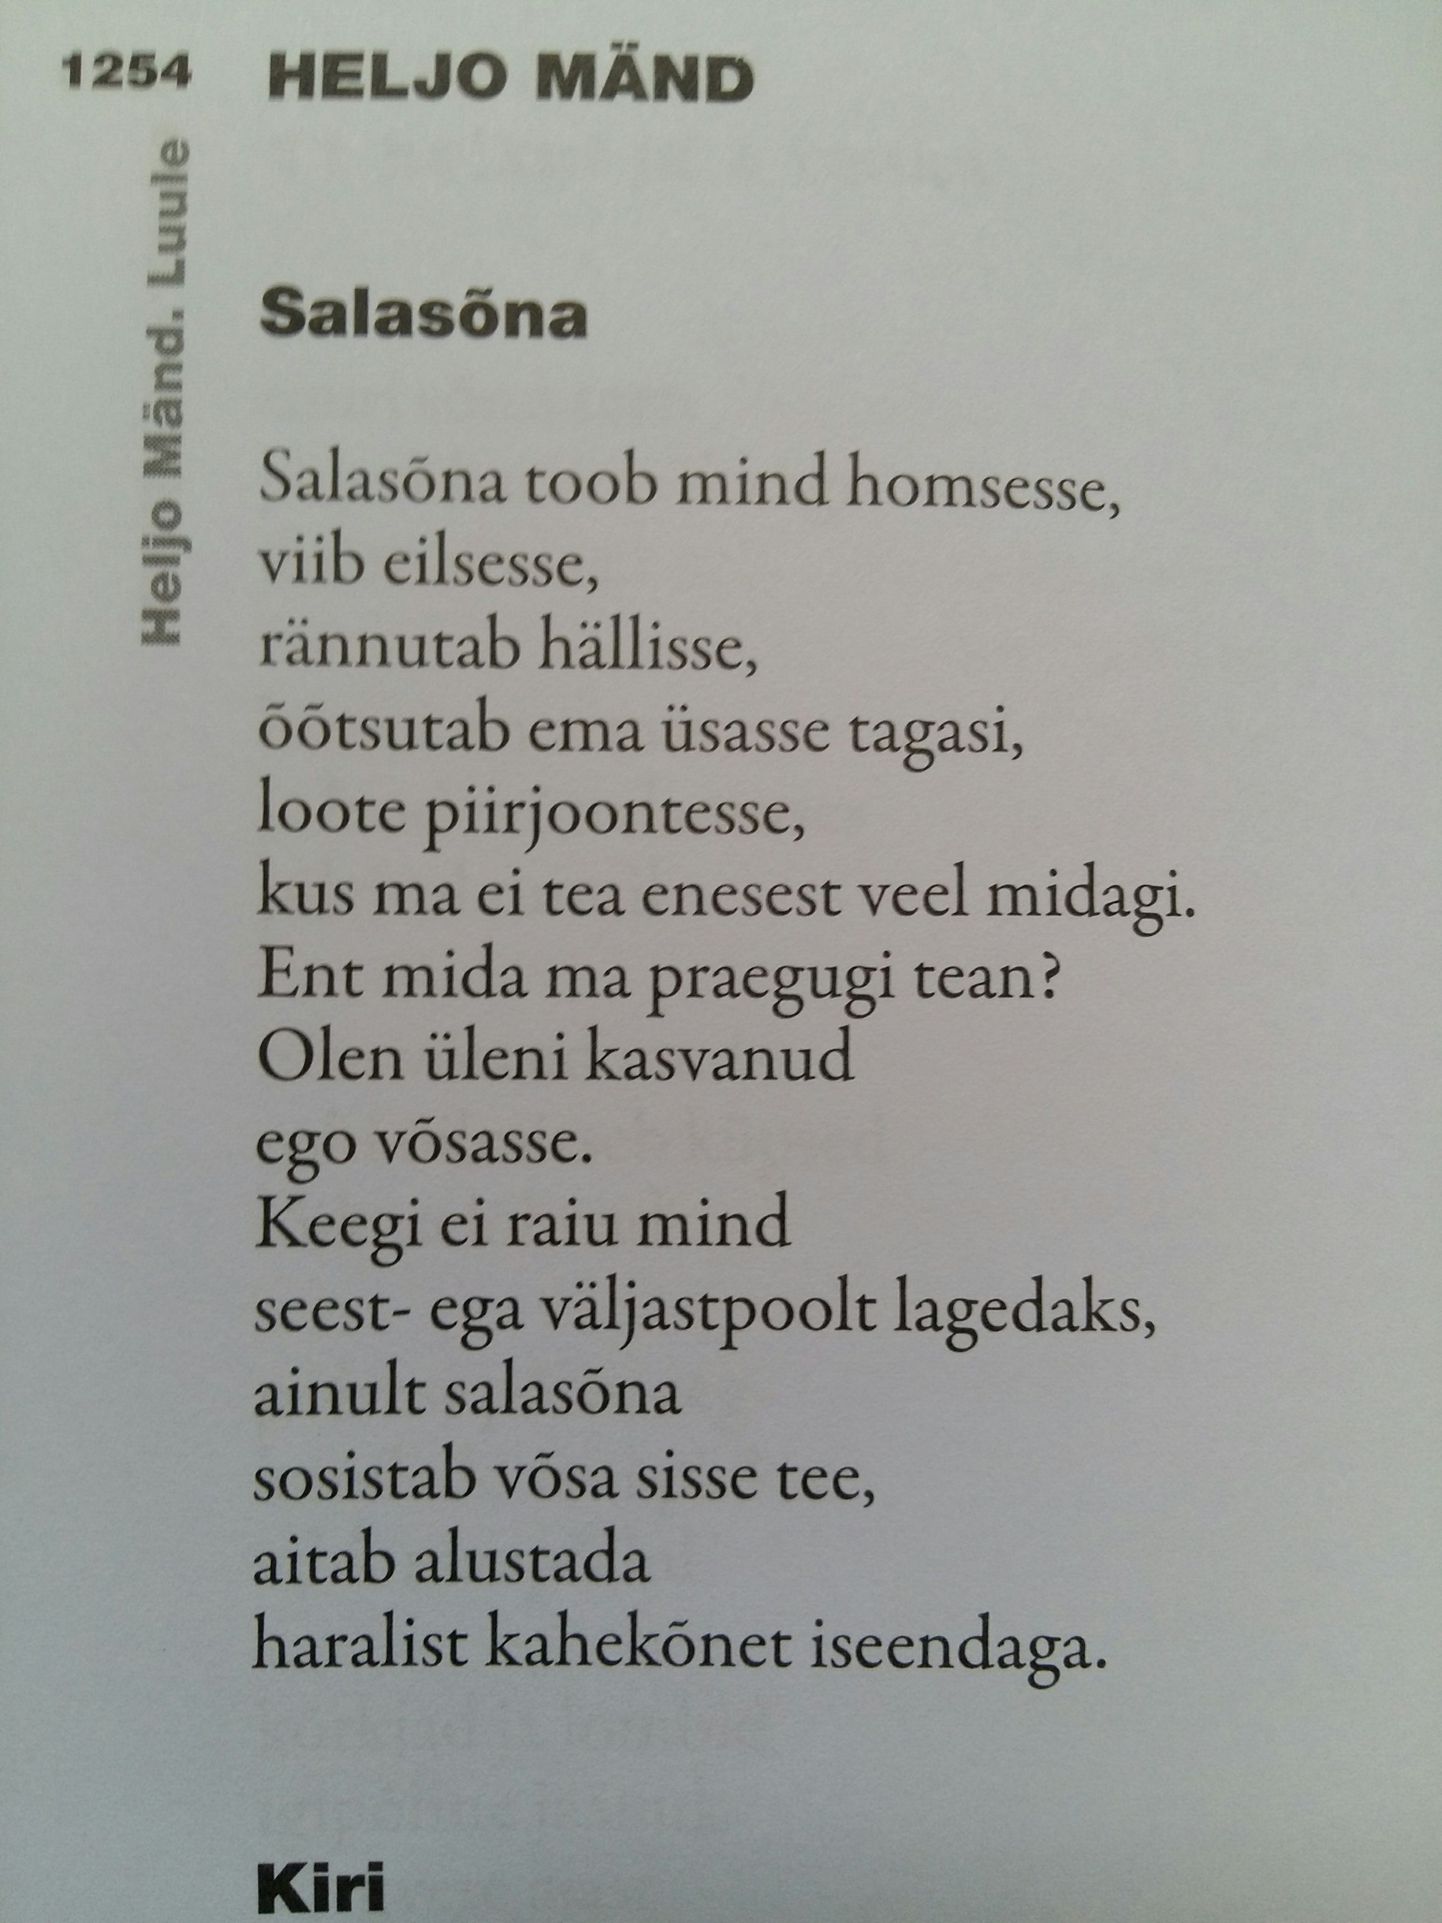 Heljo Männi luuletus ajakirjas Looming 9/2016.